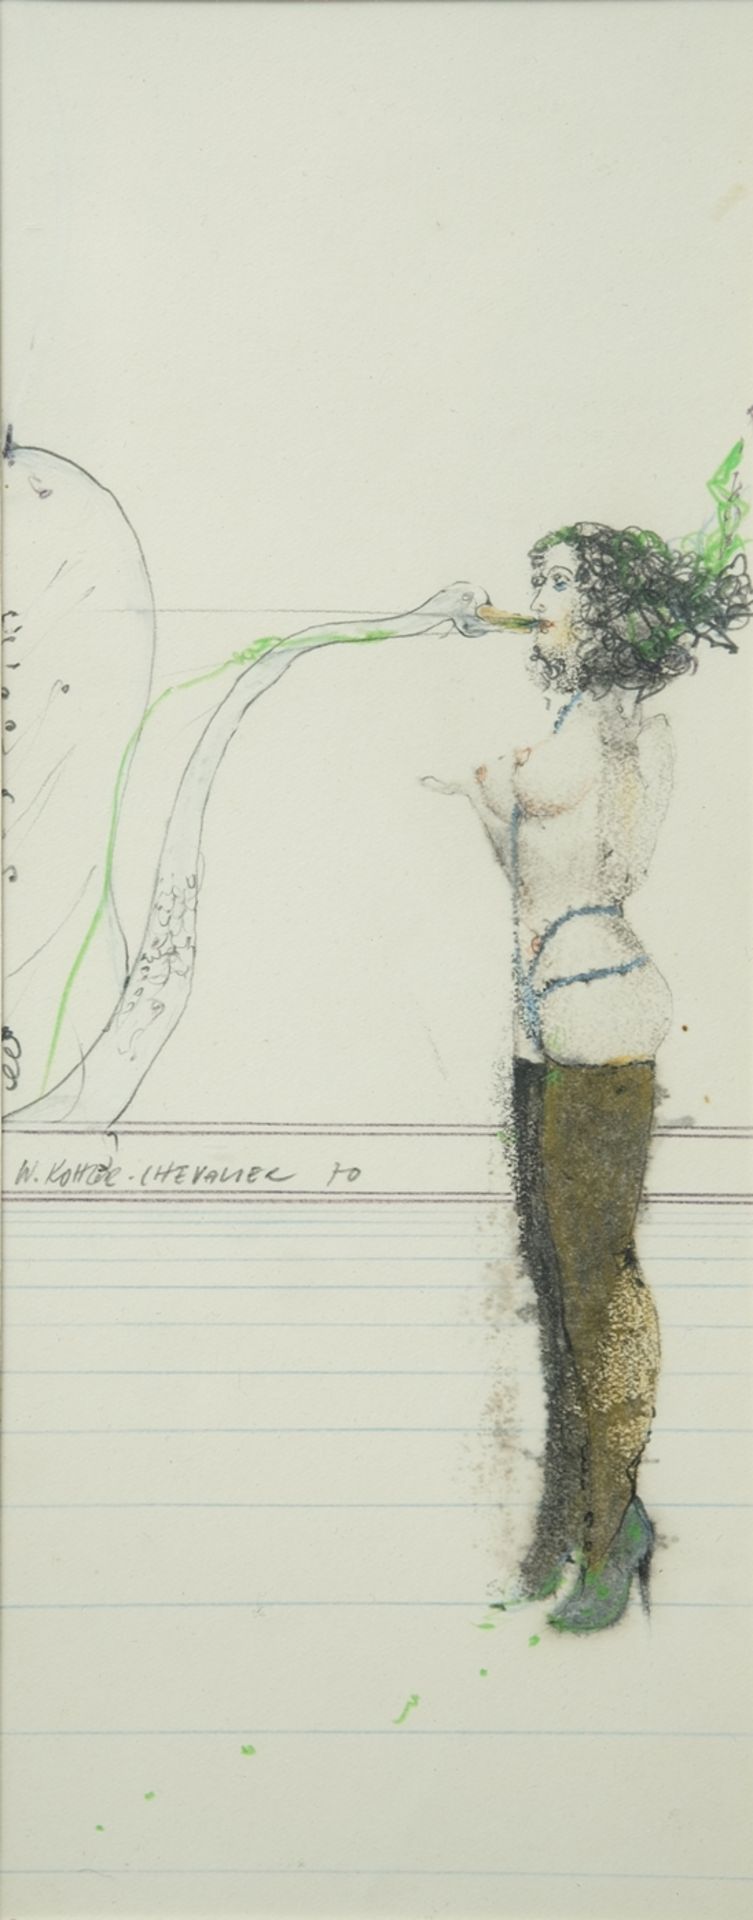 Kohler-Chevalier, Walter (1941-2009) "Leda", 1970, Kreide und Buntstift über Bleistift auf Papier. 